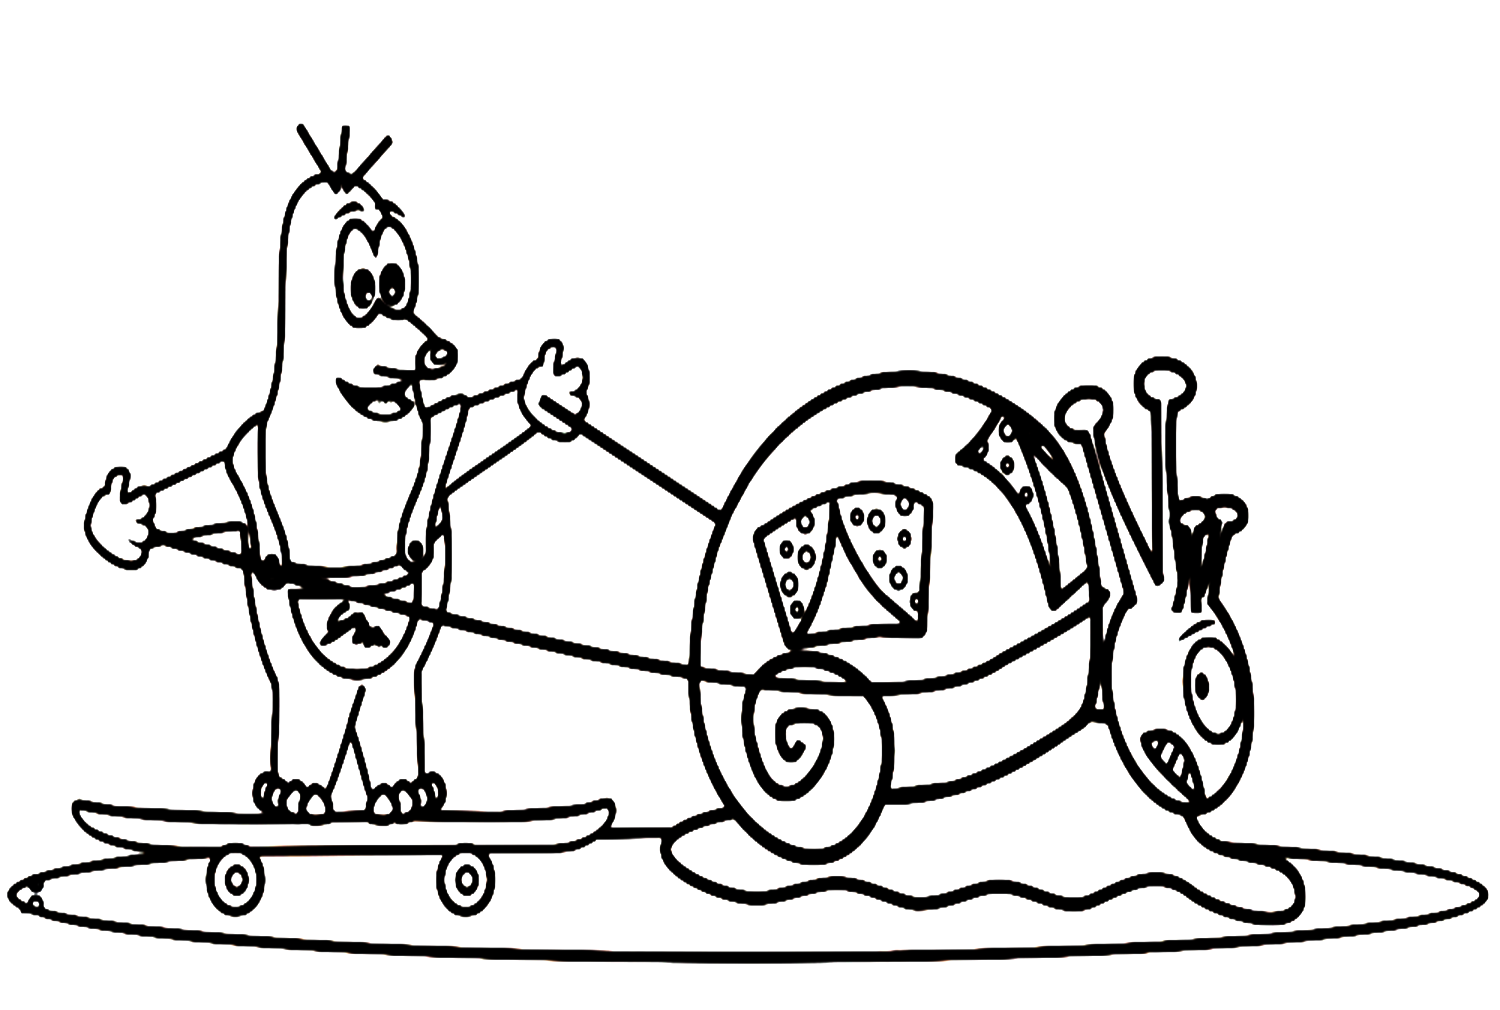 Personajes de dibujos animados de topo y caracol de Mole